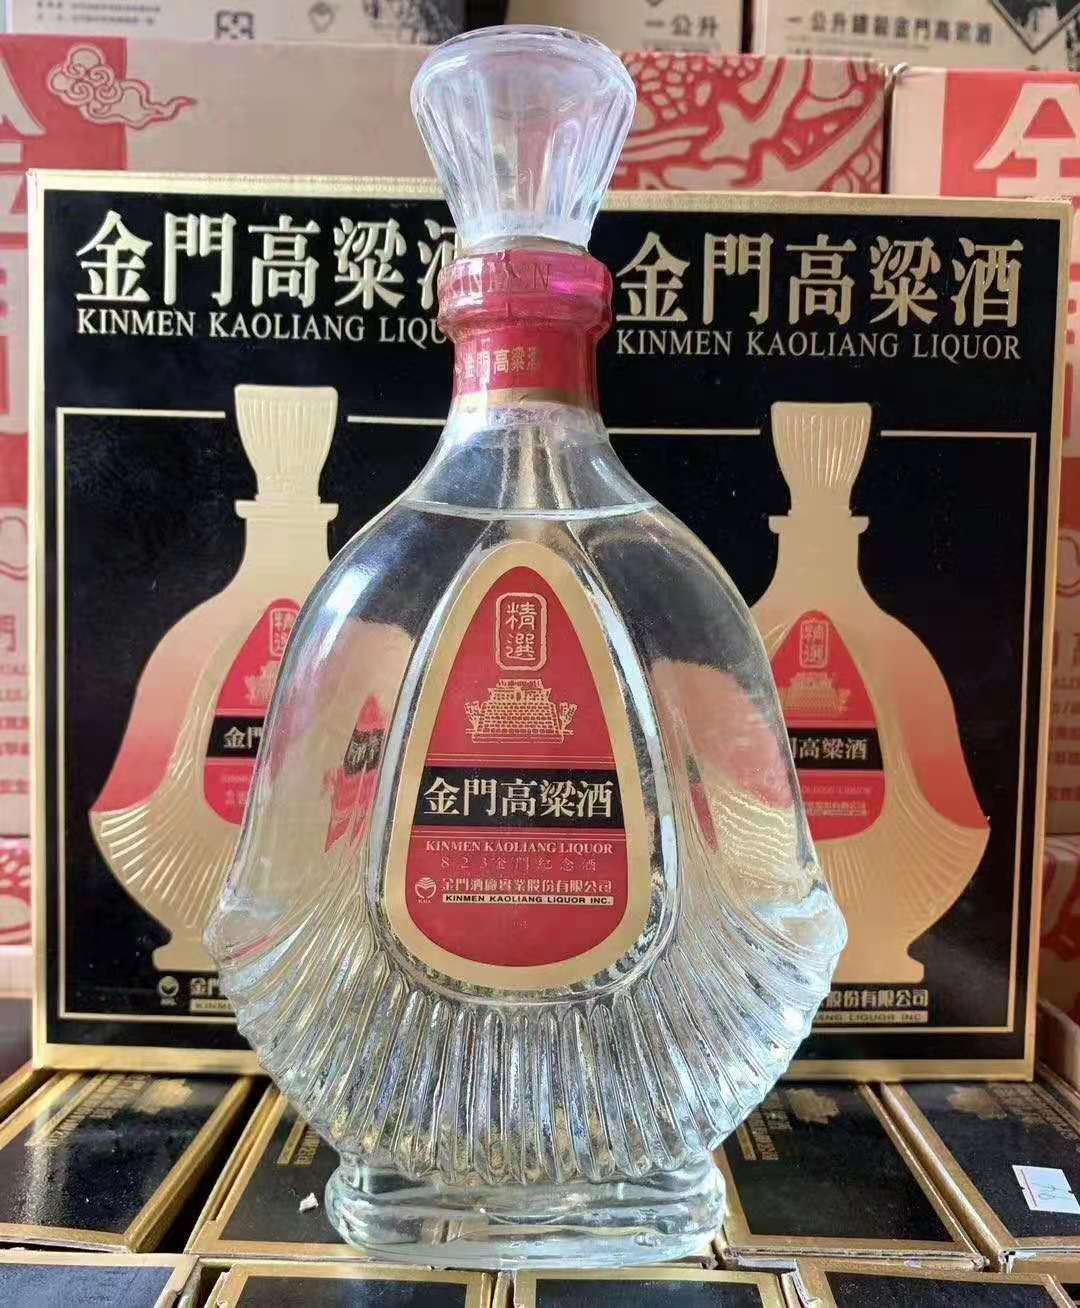 中国台湾高粱酒823金门纪念酒58度600ml扁瓶黑盒